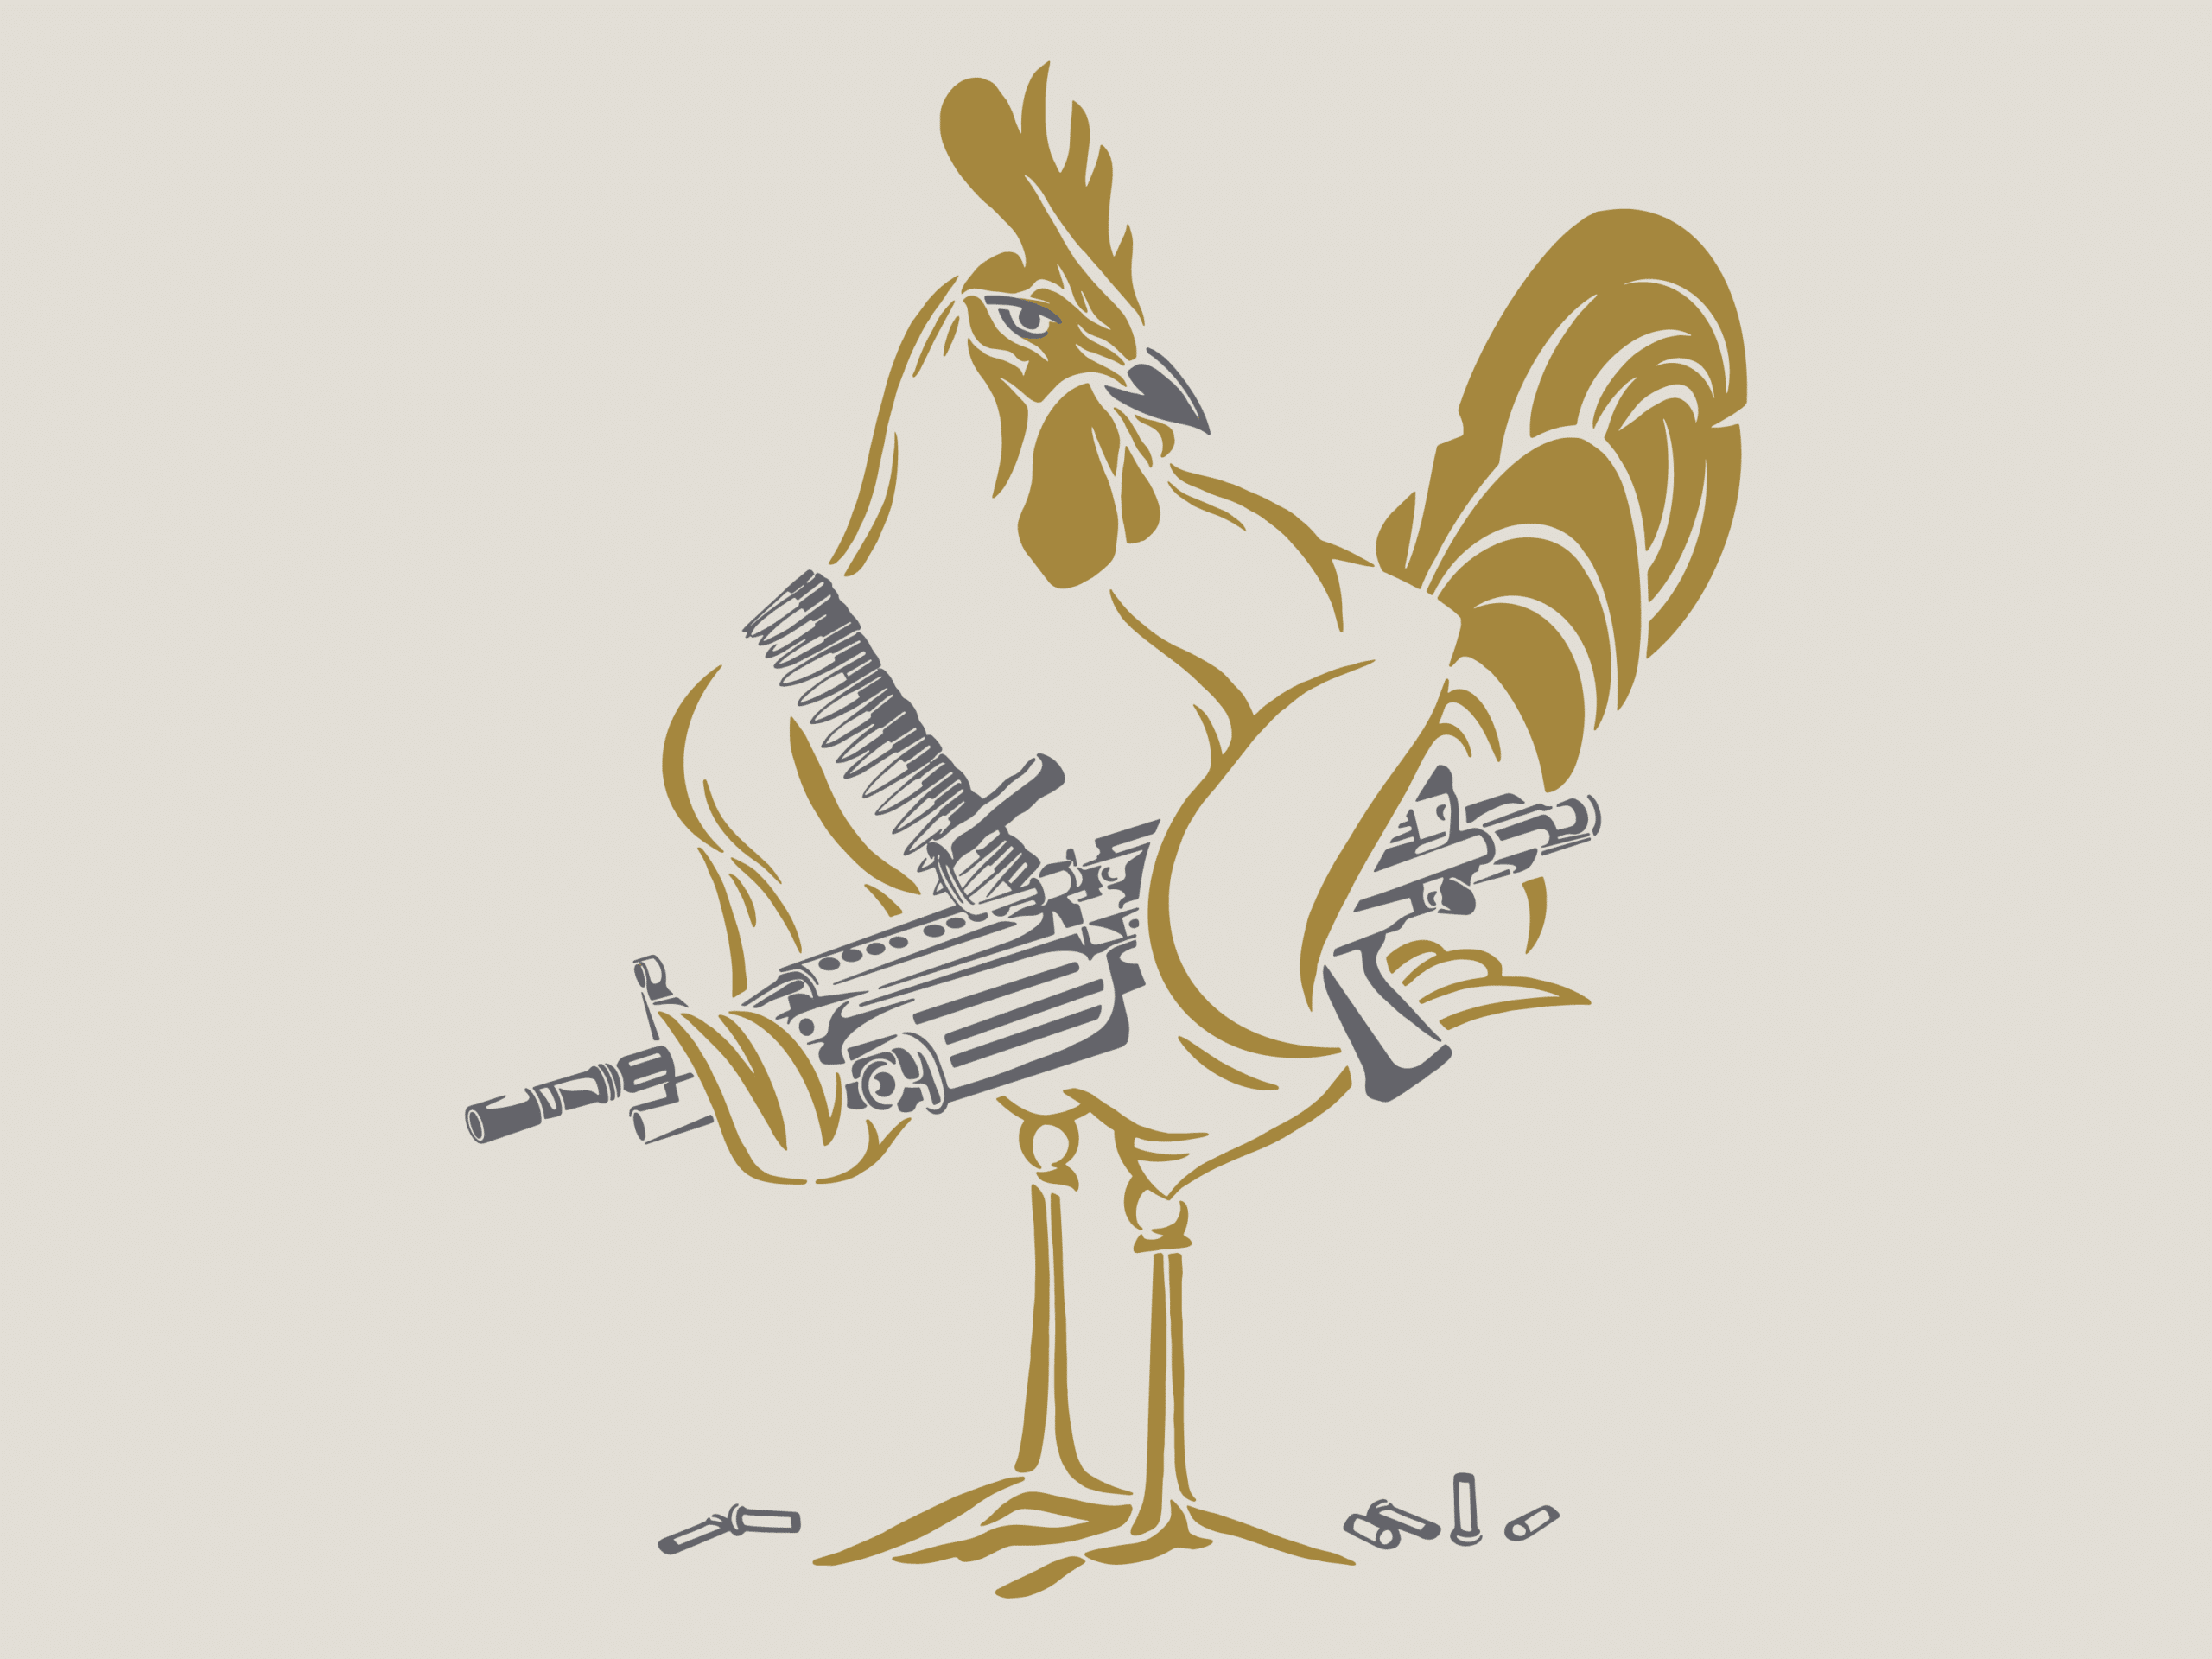 The Machine Gun Nest Rooster Illustration